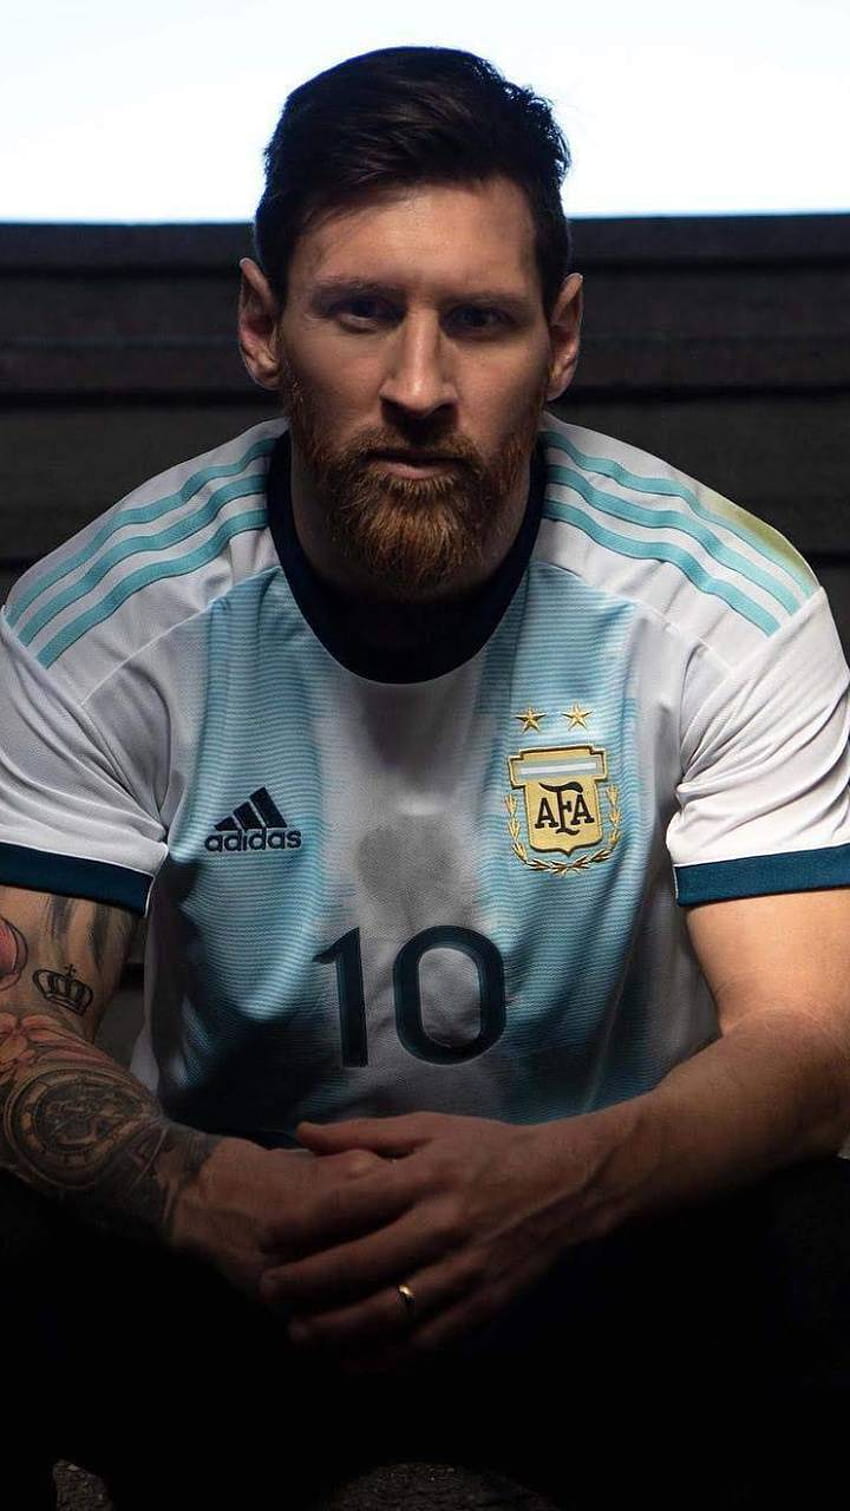 Những bức ảnh nền Messi Argentina chắc chắn sẽ khiến bạn cảm thấy tự hào về đội tuyển và cầu thủ ưu tú này. Hãy xem và cảm nhận những phút giây đầy cảm xúc của những trận đấu quan trọng.